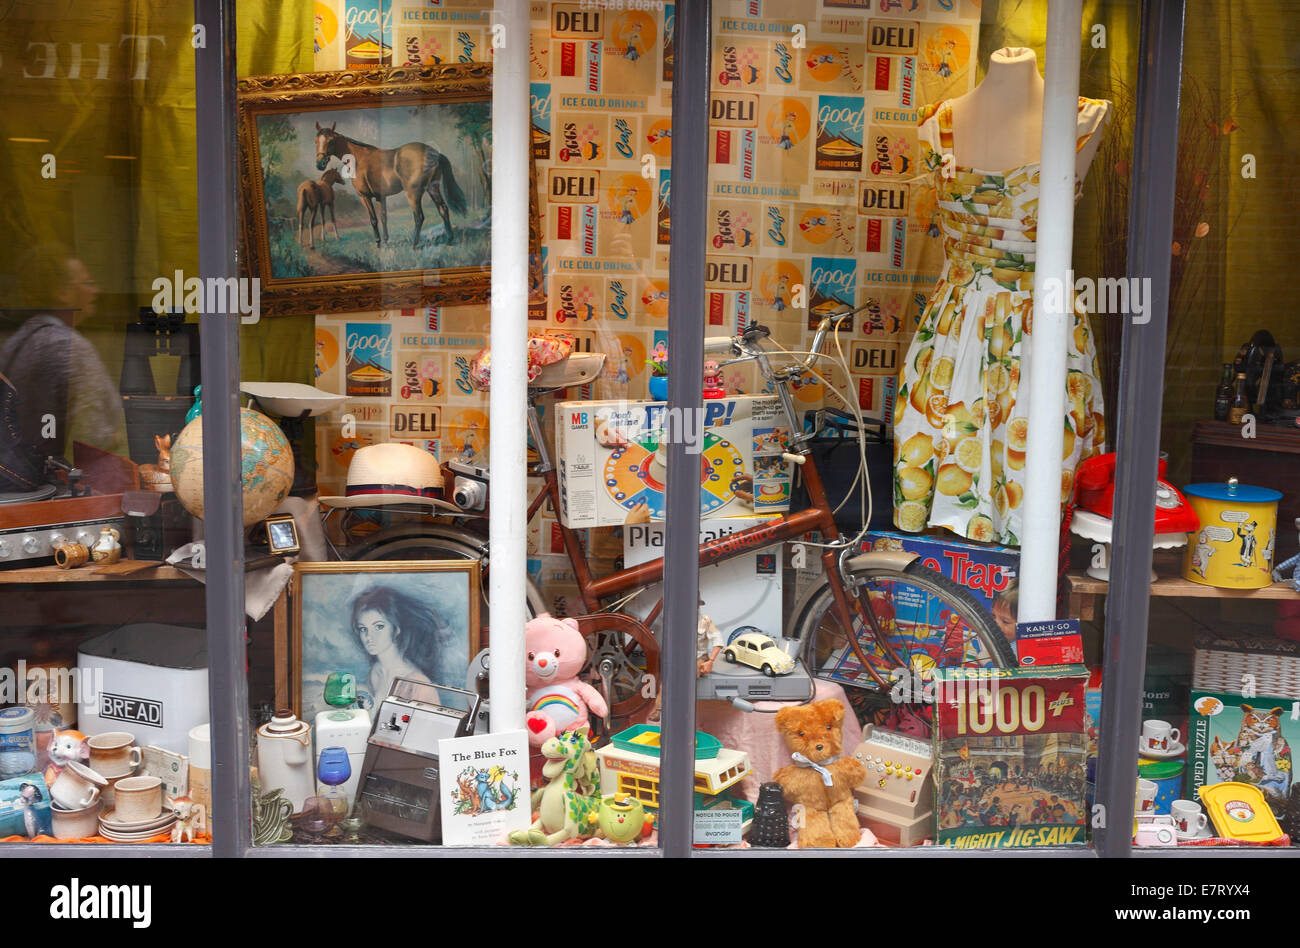 Charity-Schaufenster mit alt altmodisch aussehende Gegenstände zum Verkauf. Stockfoto